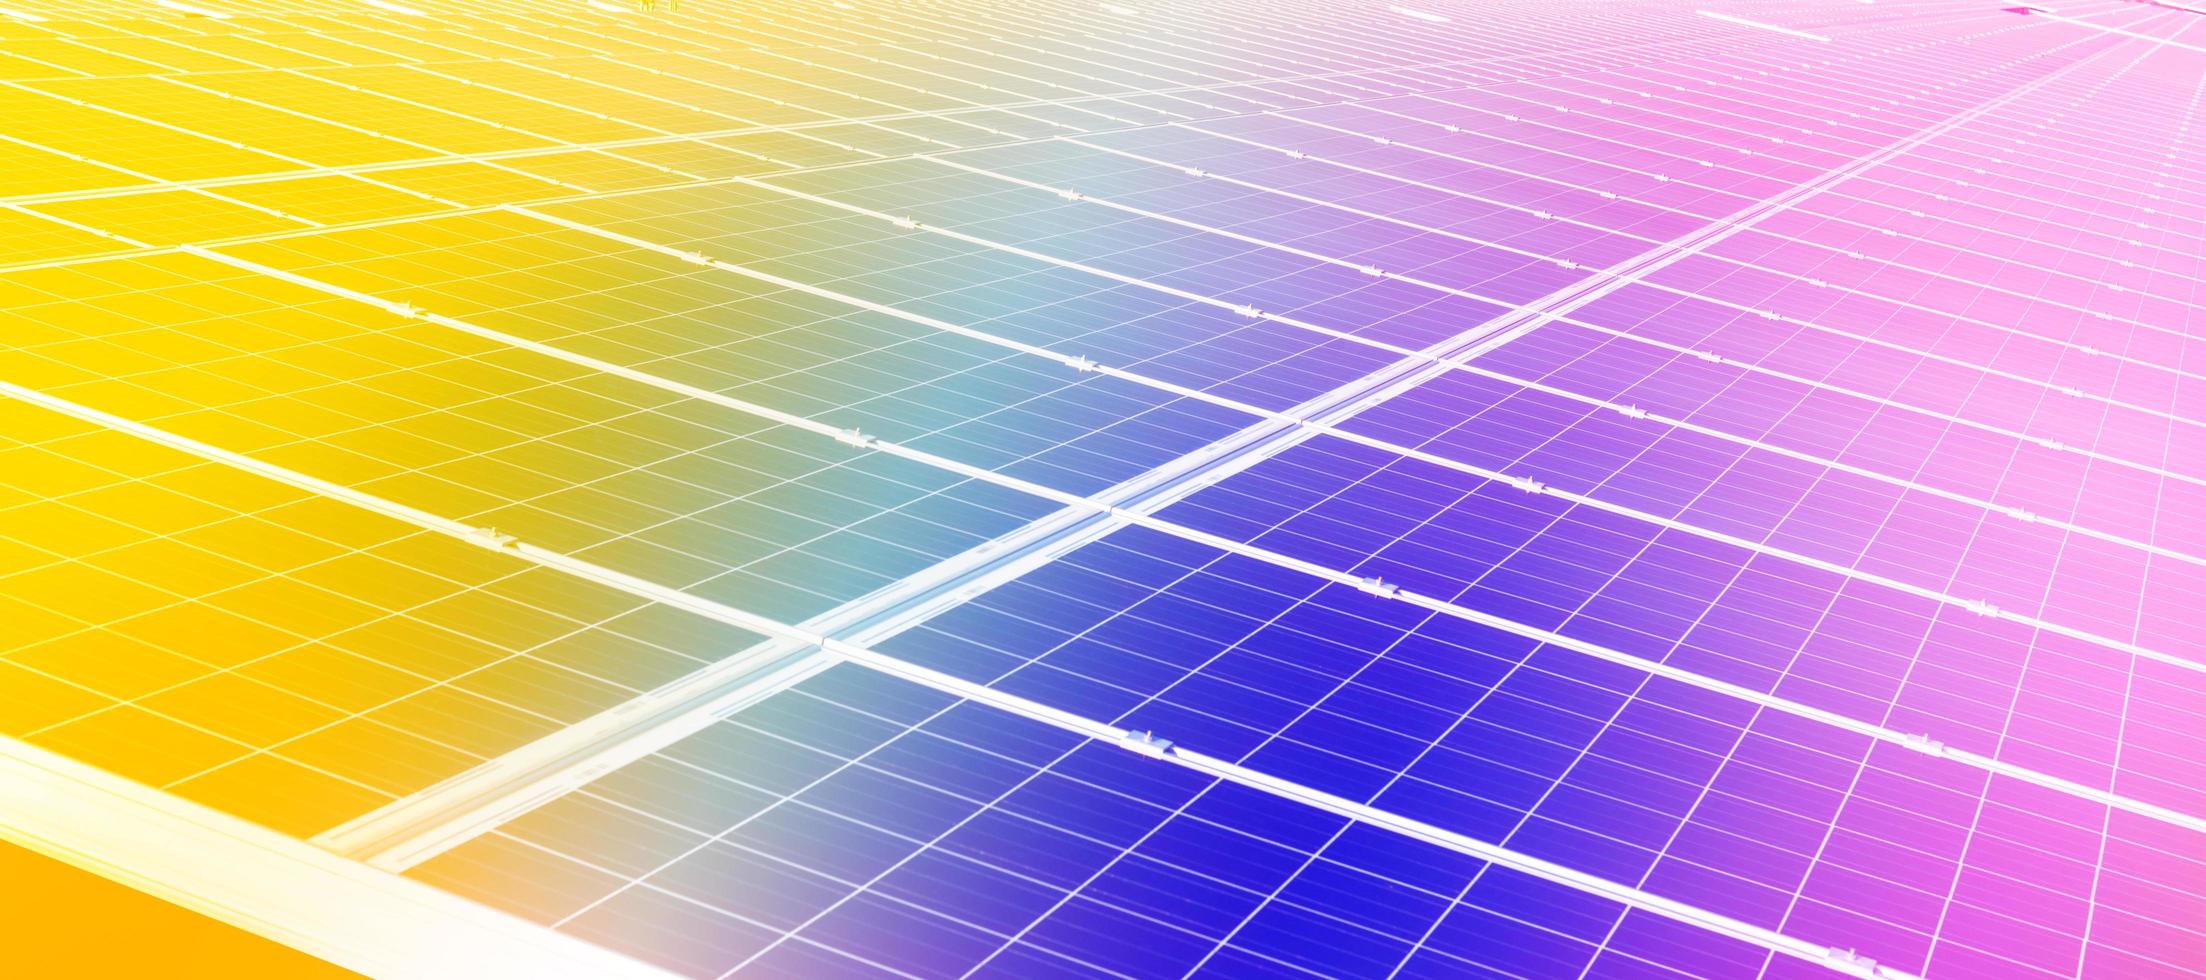 paneles de células solares en una planta de energía fotovoltaica foto